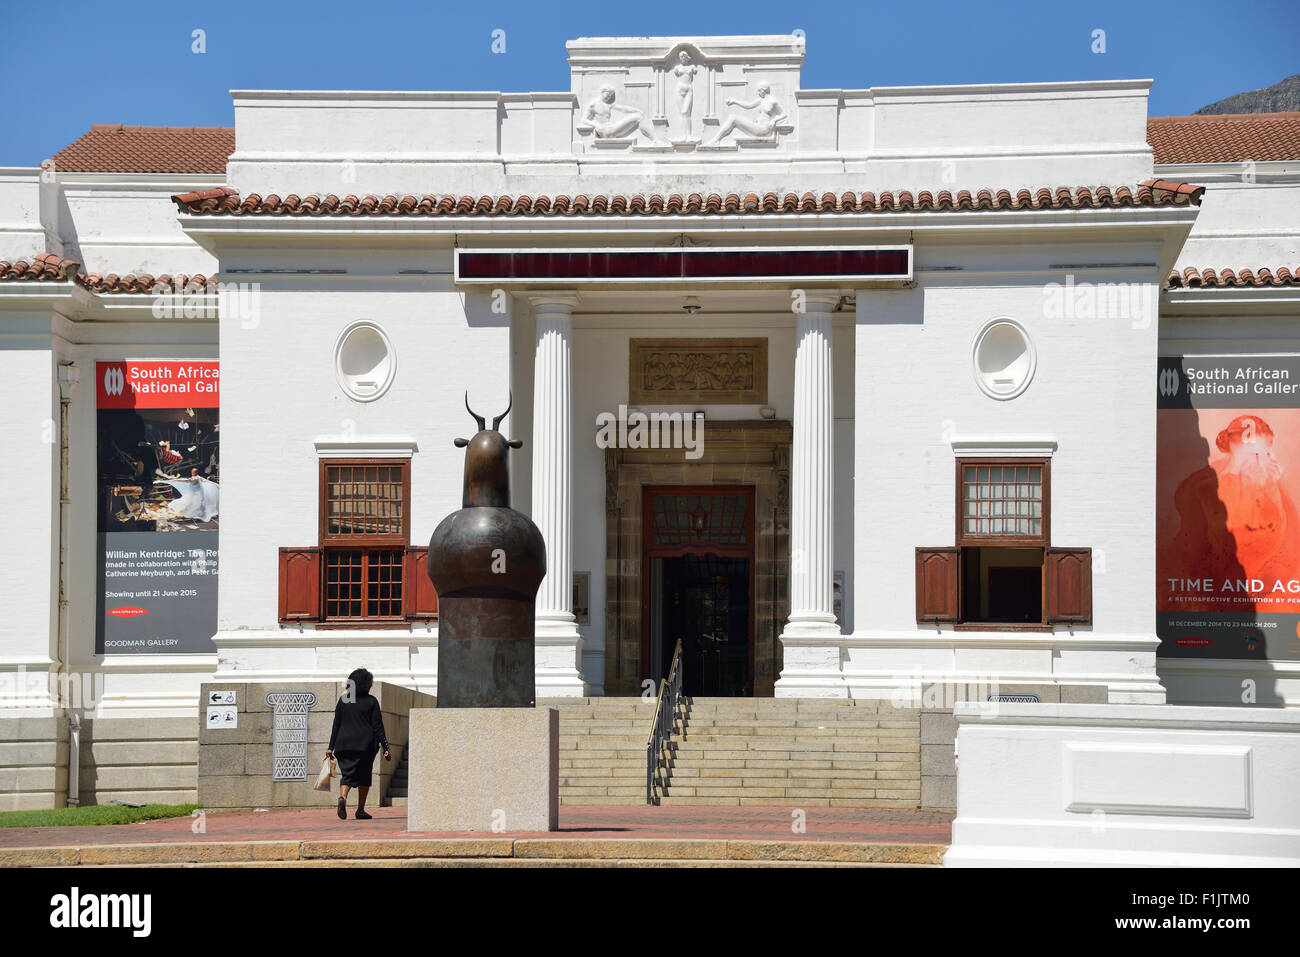 South African National Gallery, le jardin, Cape Town, Western Cape Province, République d'Afrique du Sud Banque D'Images